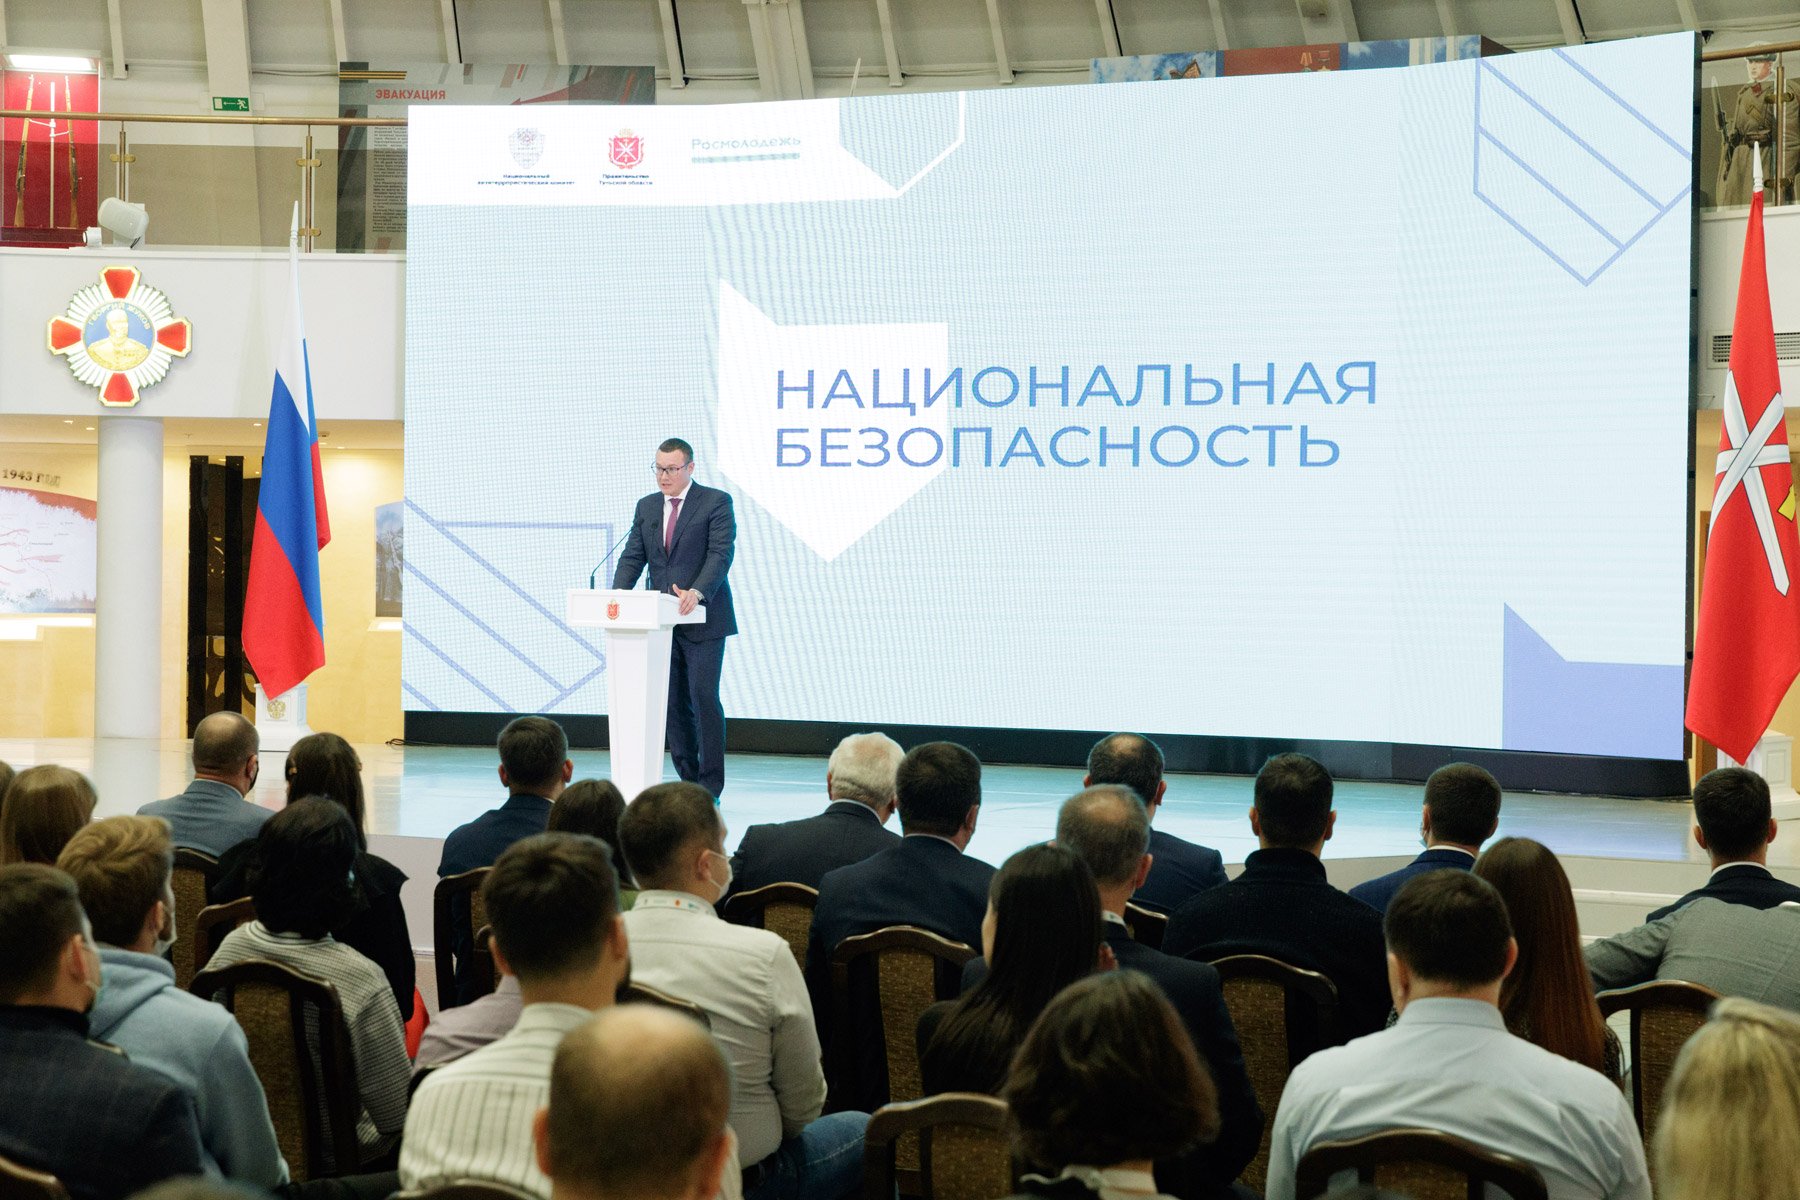 В Туле прошел Всероссийский форум "Национальная безопасность"